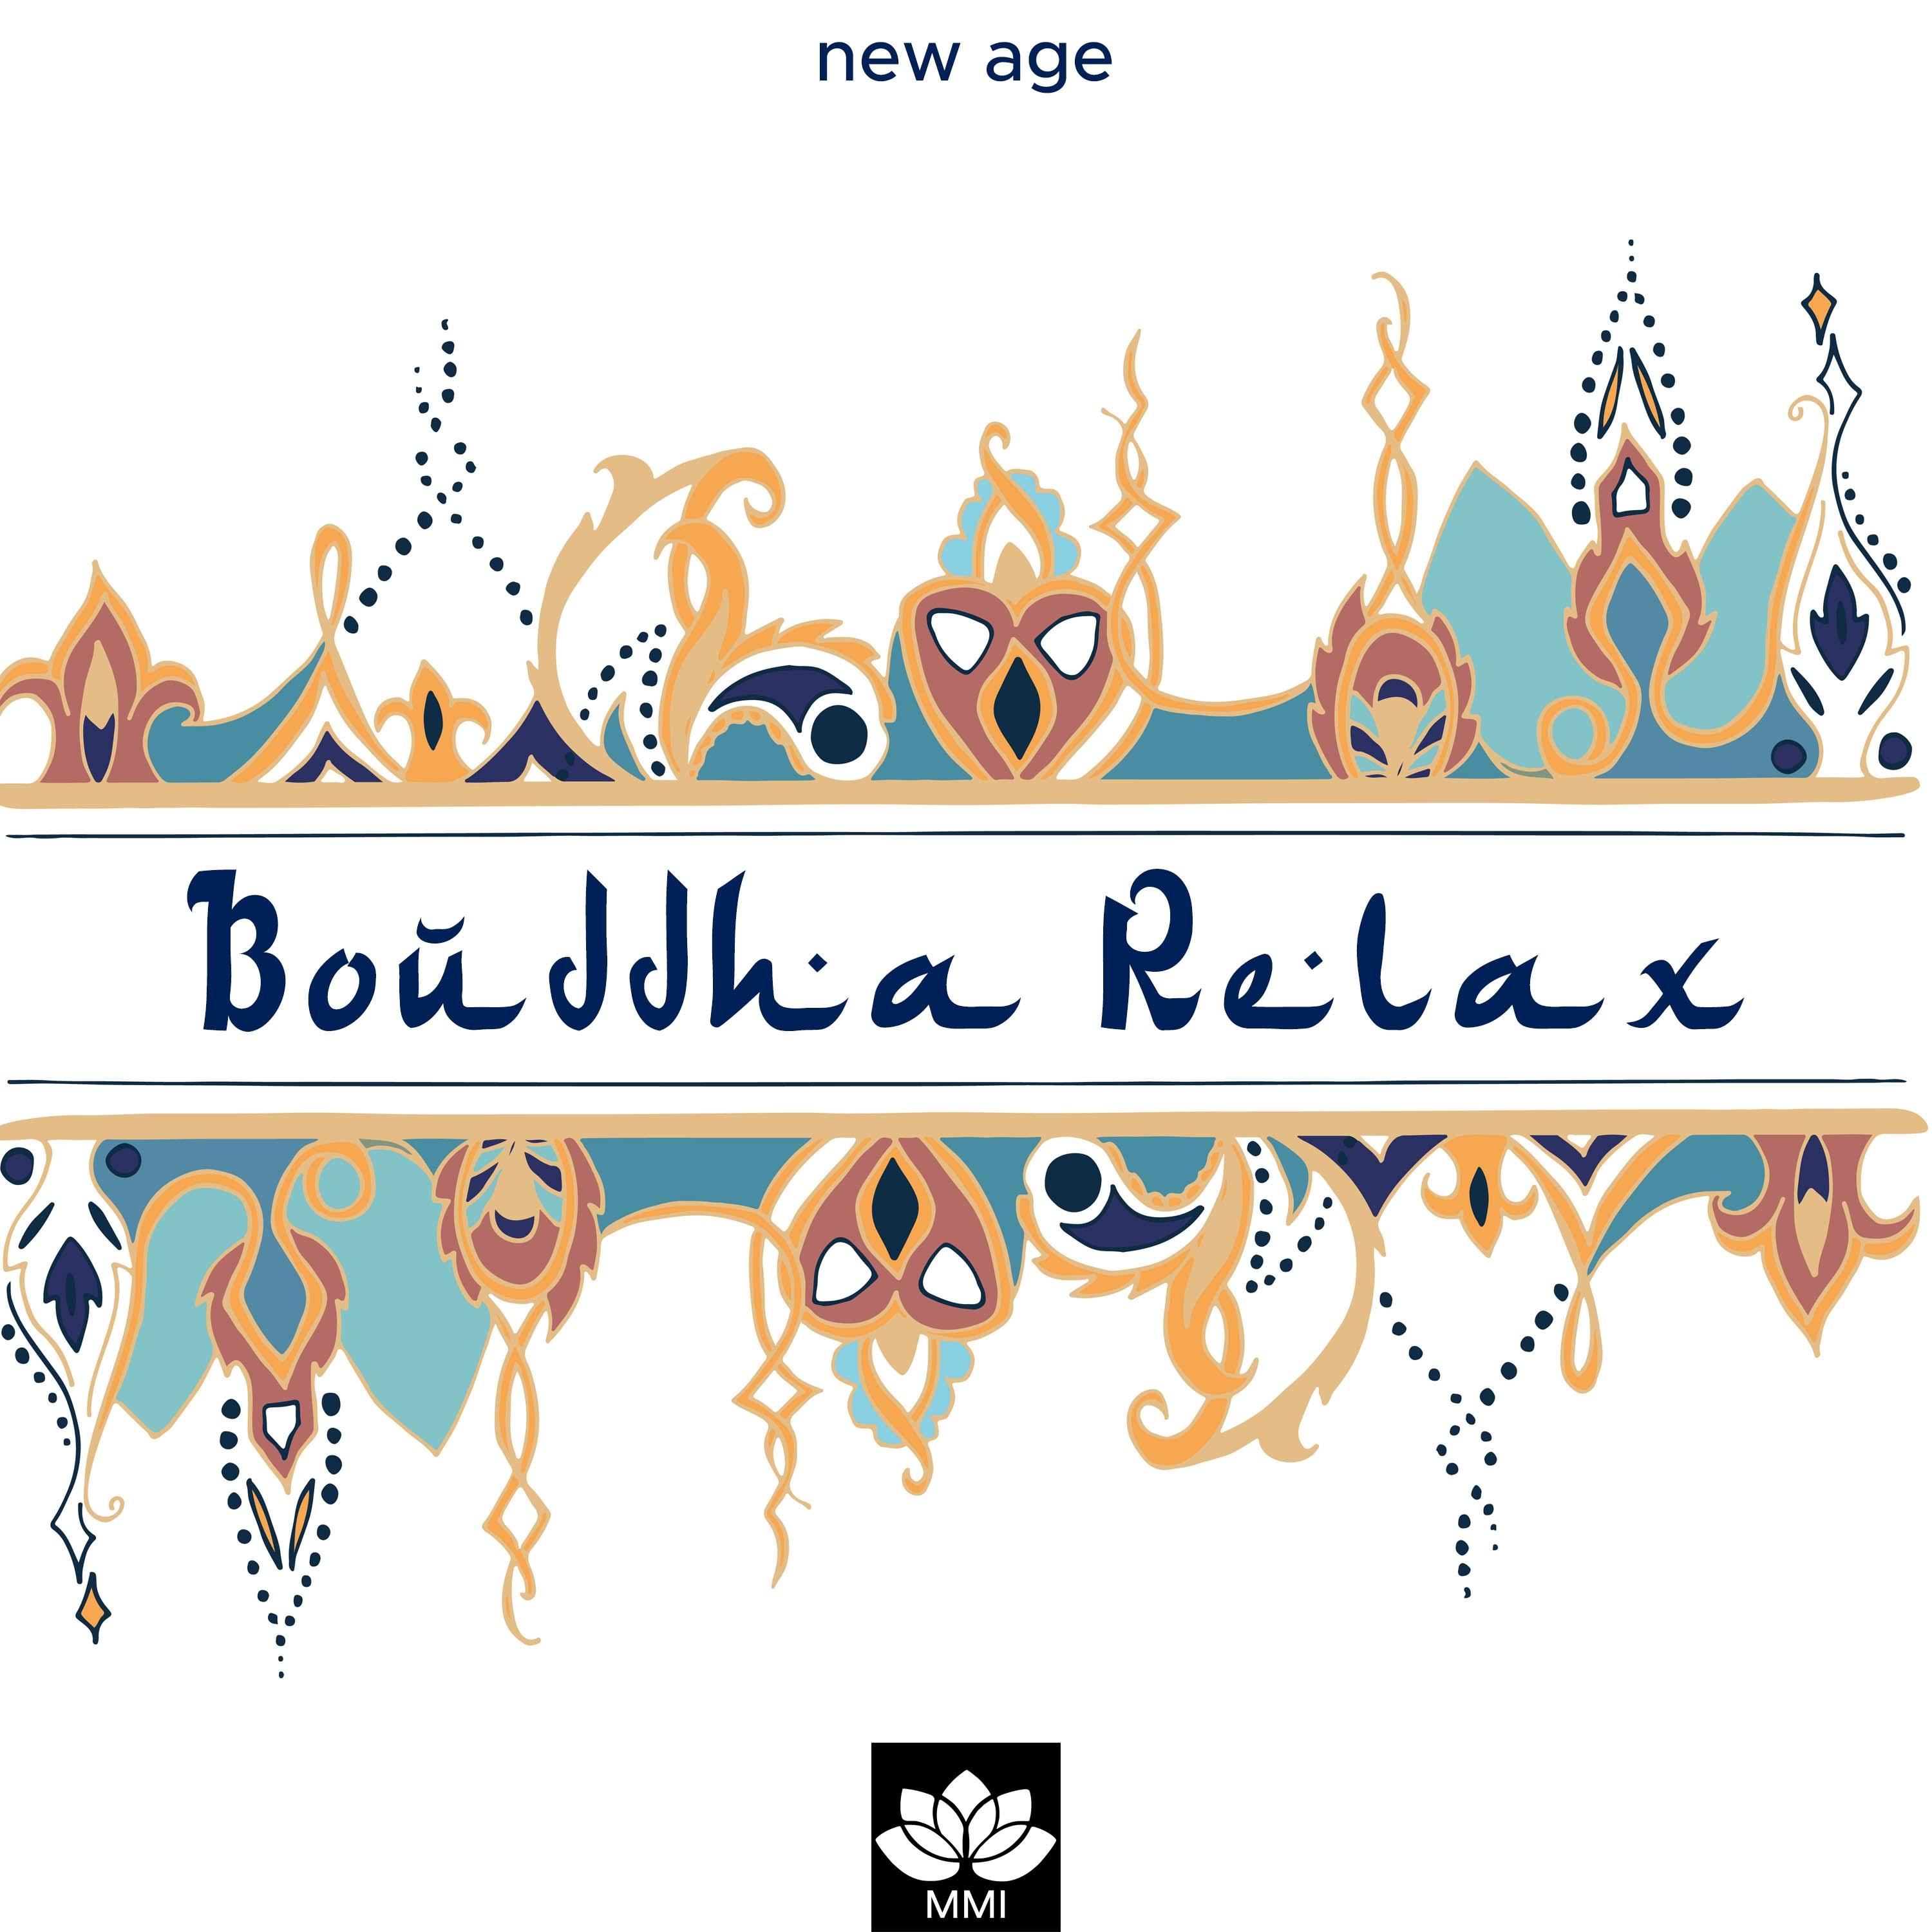 Bouddha relax - Musique asiatique instrumentale avec sons naturels, piano, pluie, vagues et musique relaxante